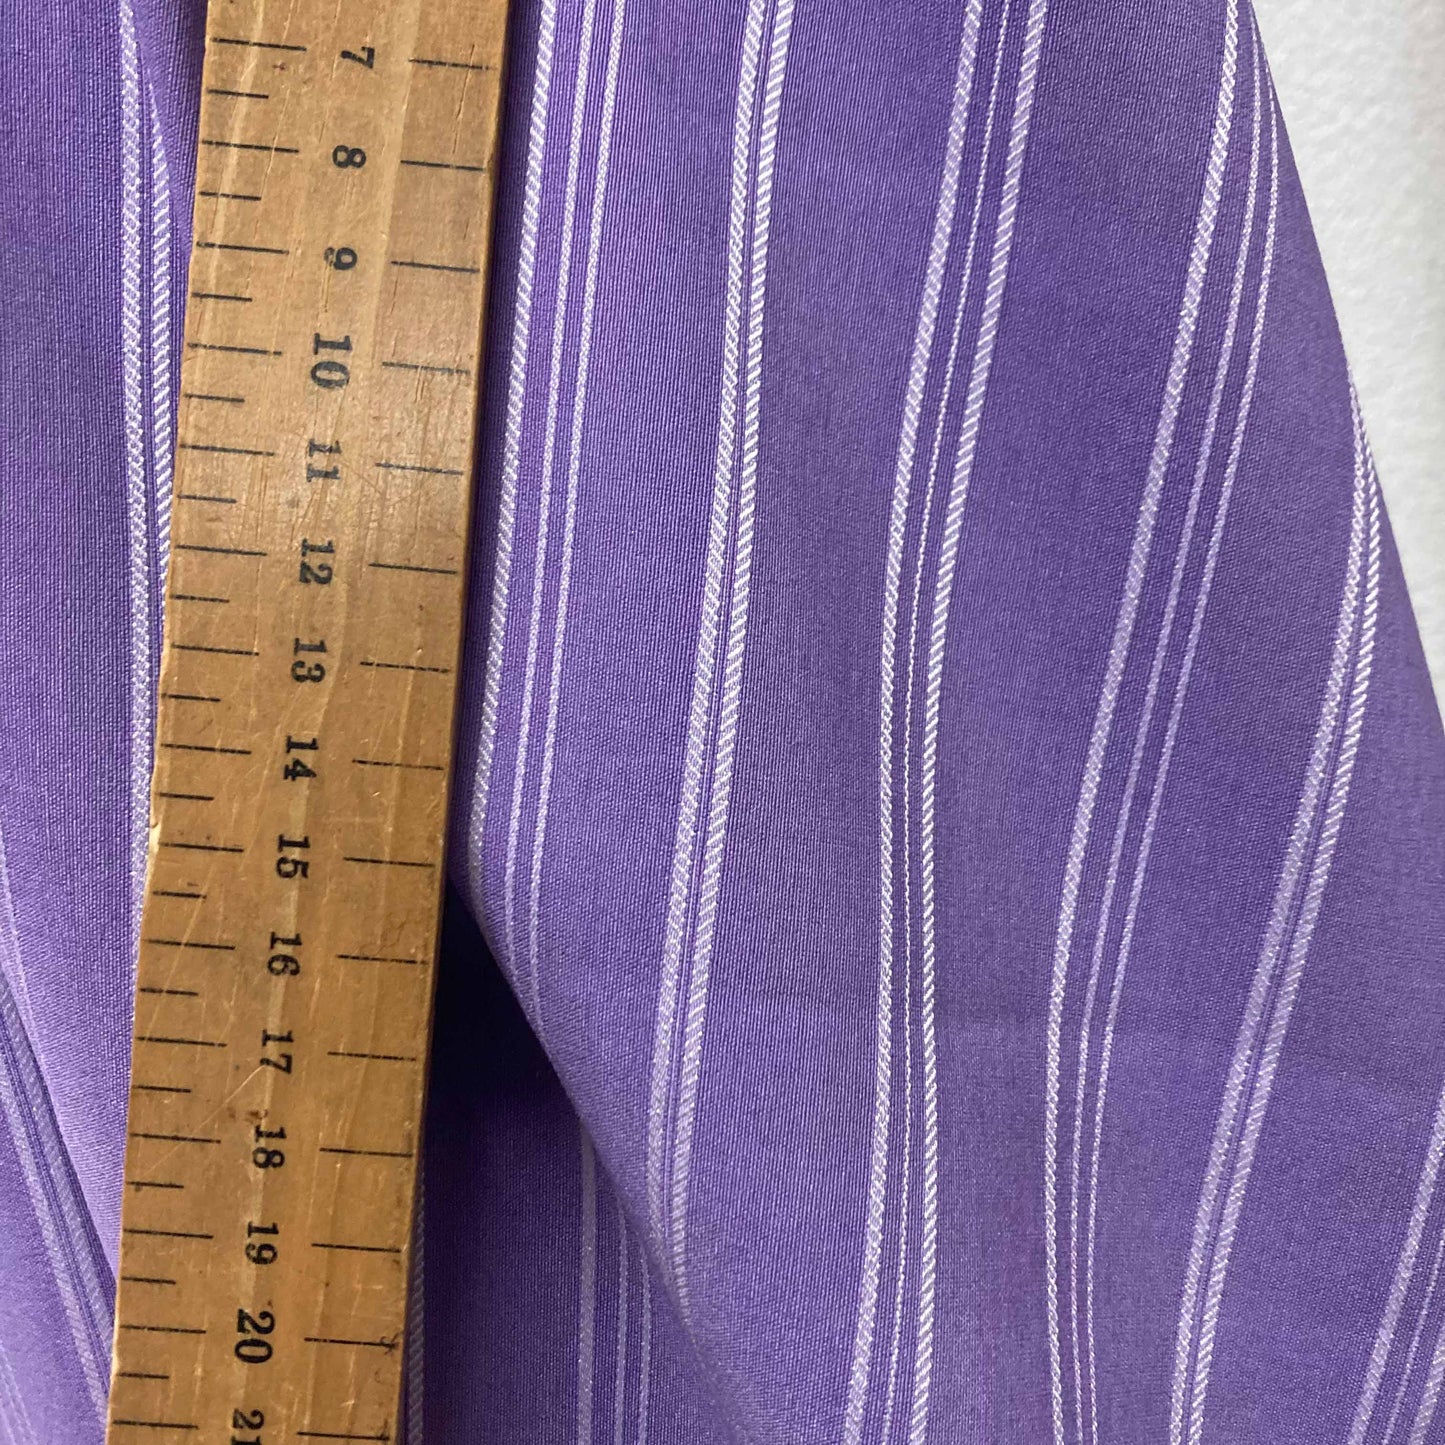 Bengaline Fabric - Purple, white